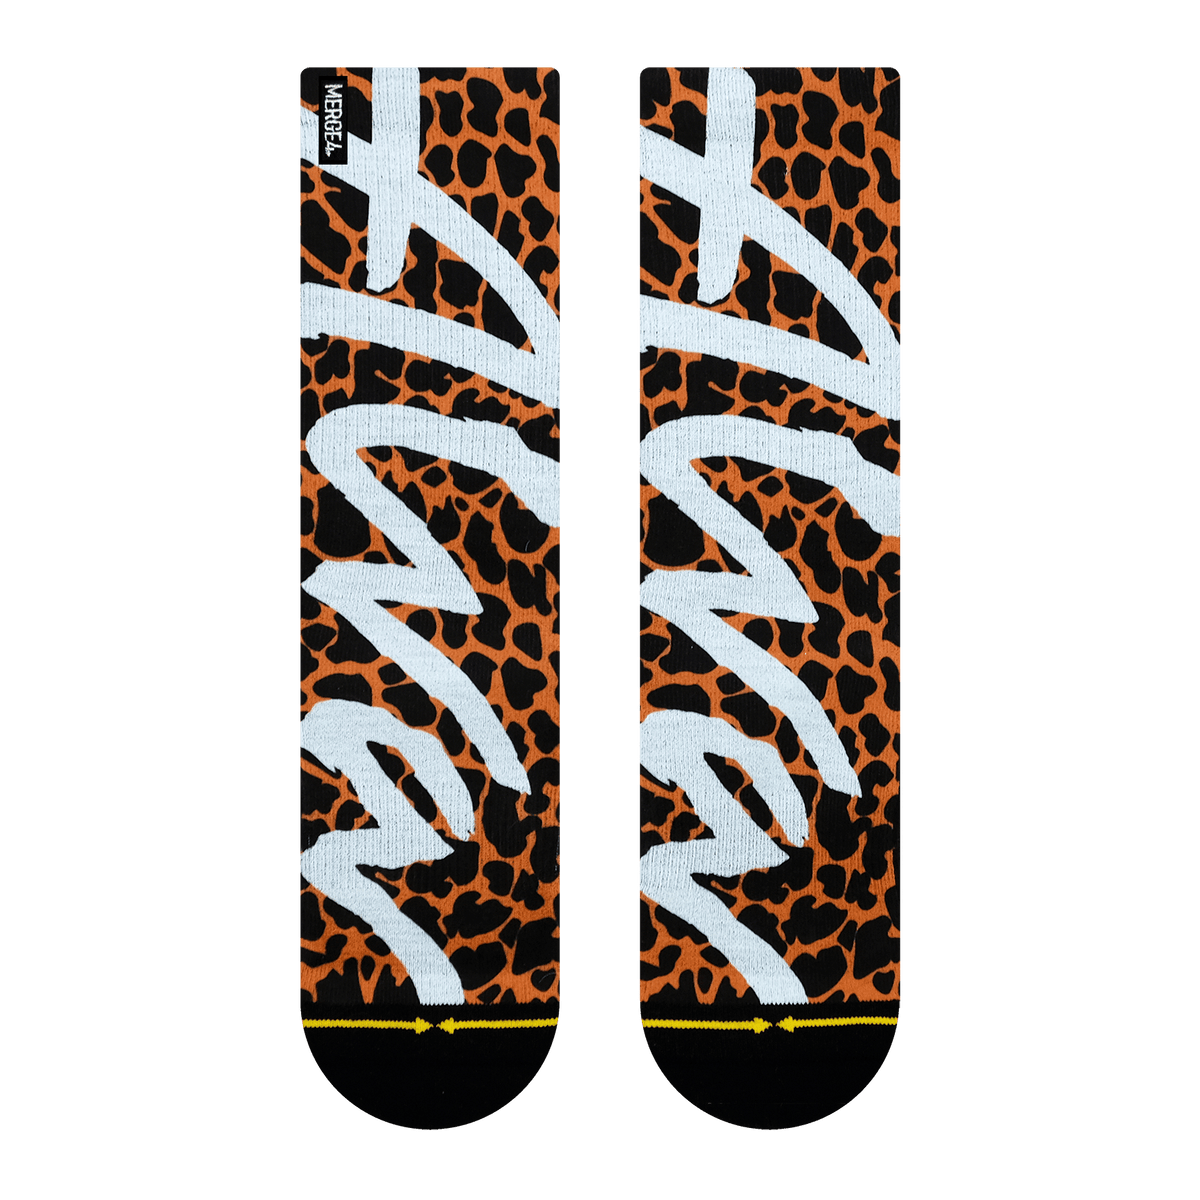 Merge4 x Tony Alva Cheetah Crew Socks Sunny Smith LLC